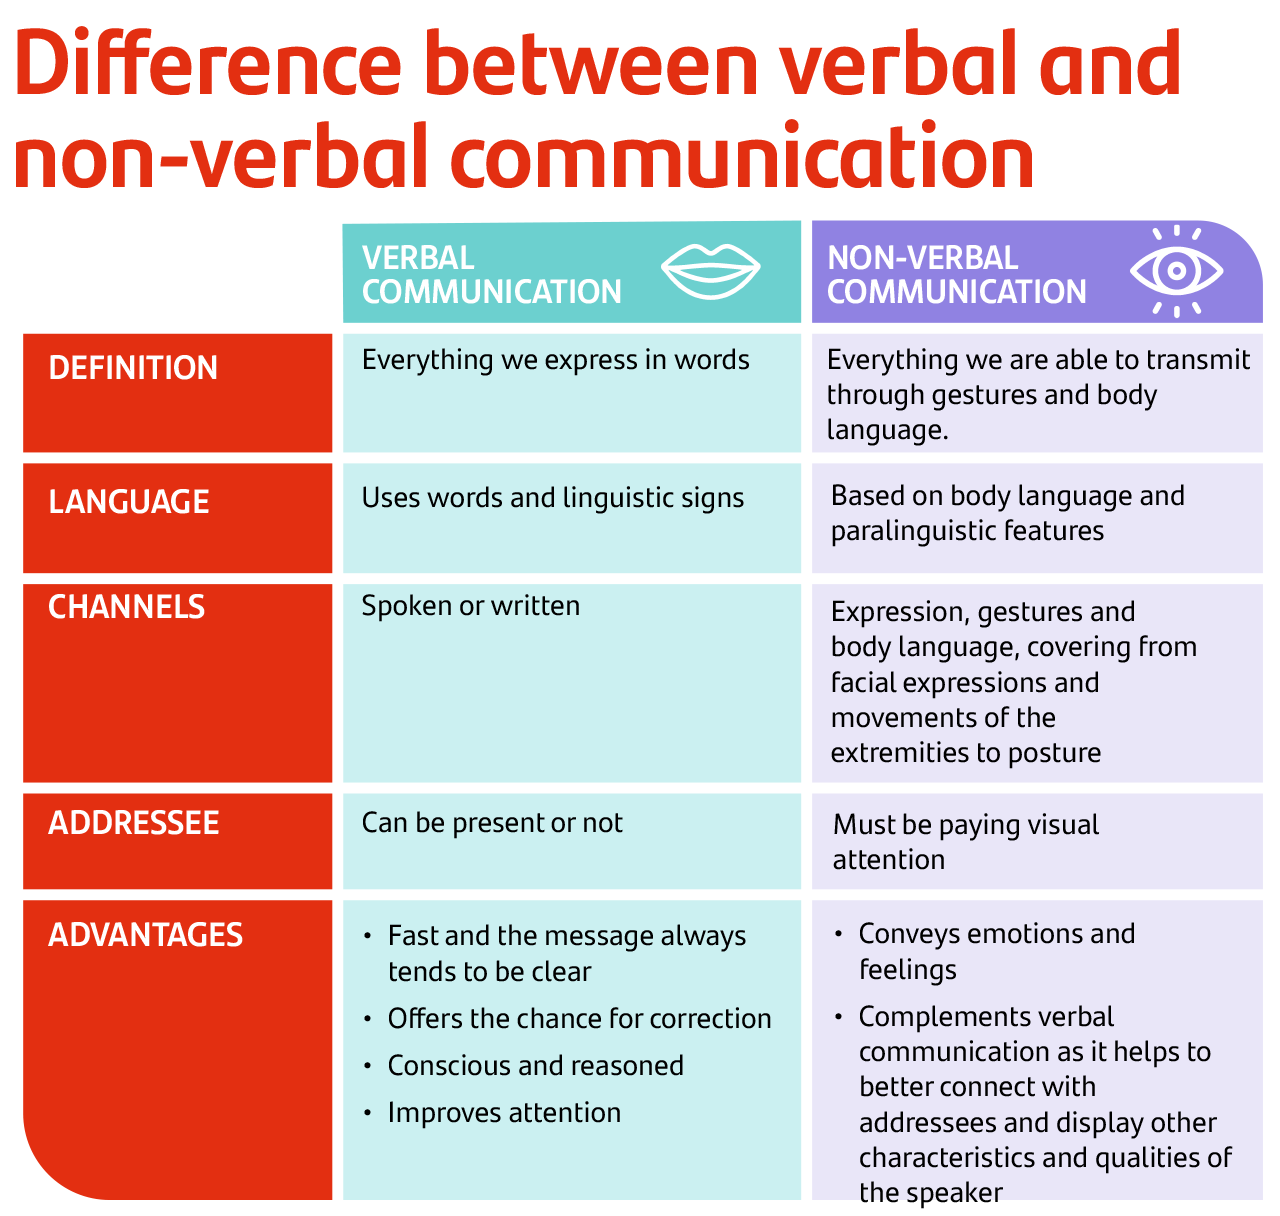 diferencias entre la comunicación verbal y no verbal